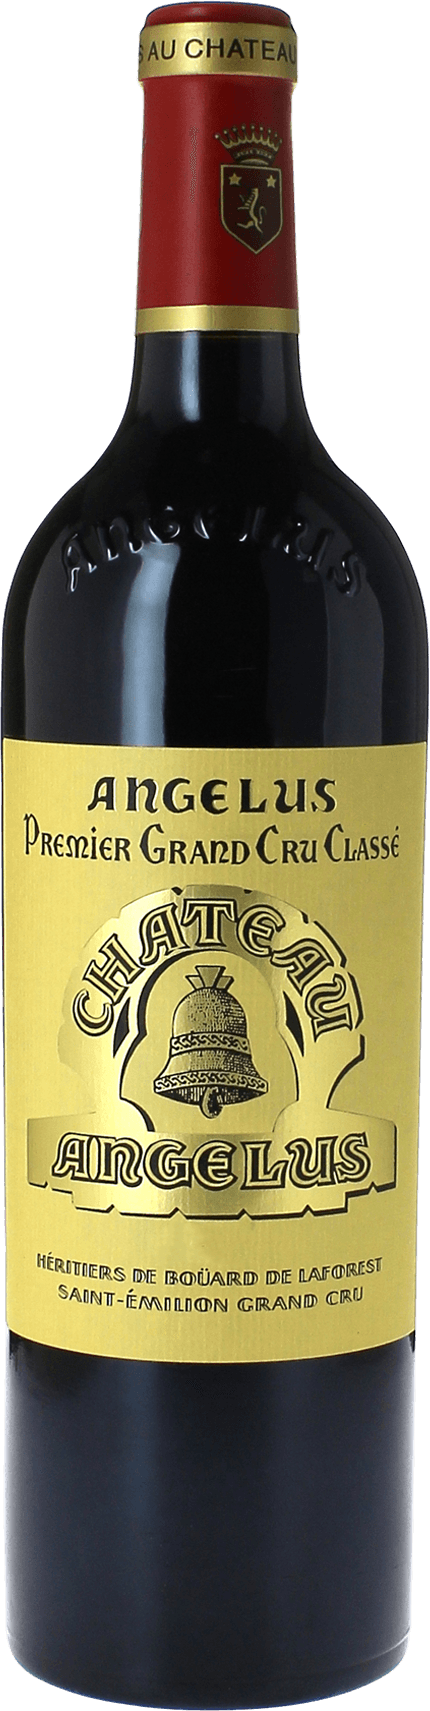 Angelus 1993 1er Grand cru B class Saint-Emilion, Bordeaux rouge